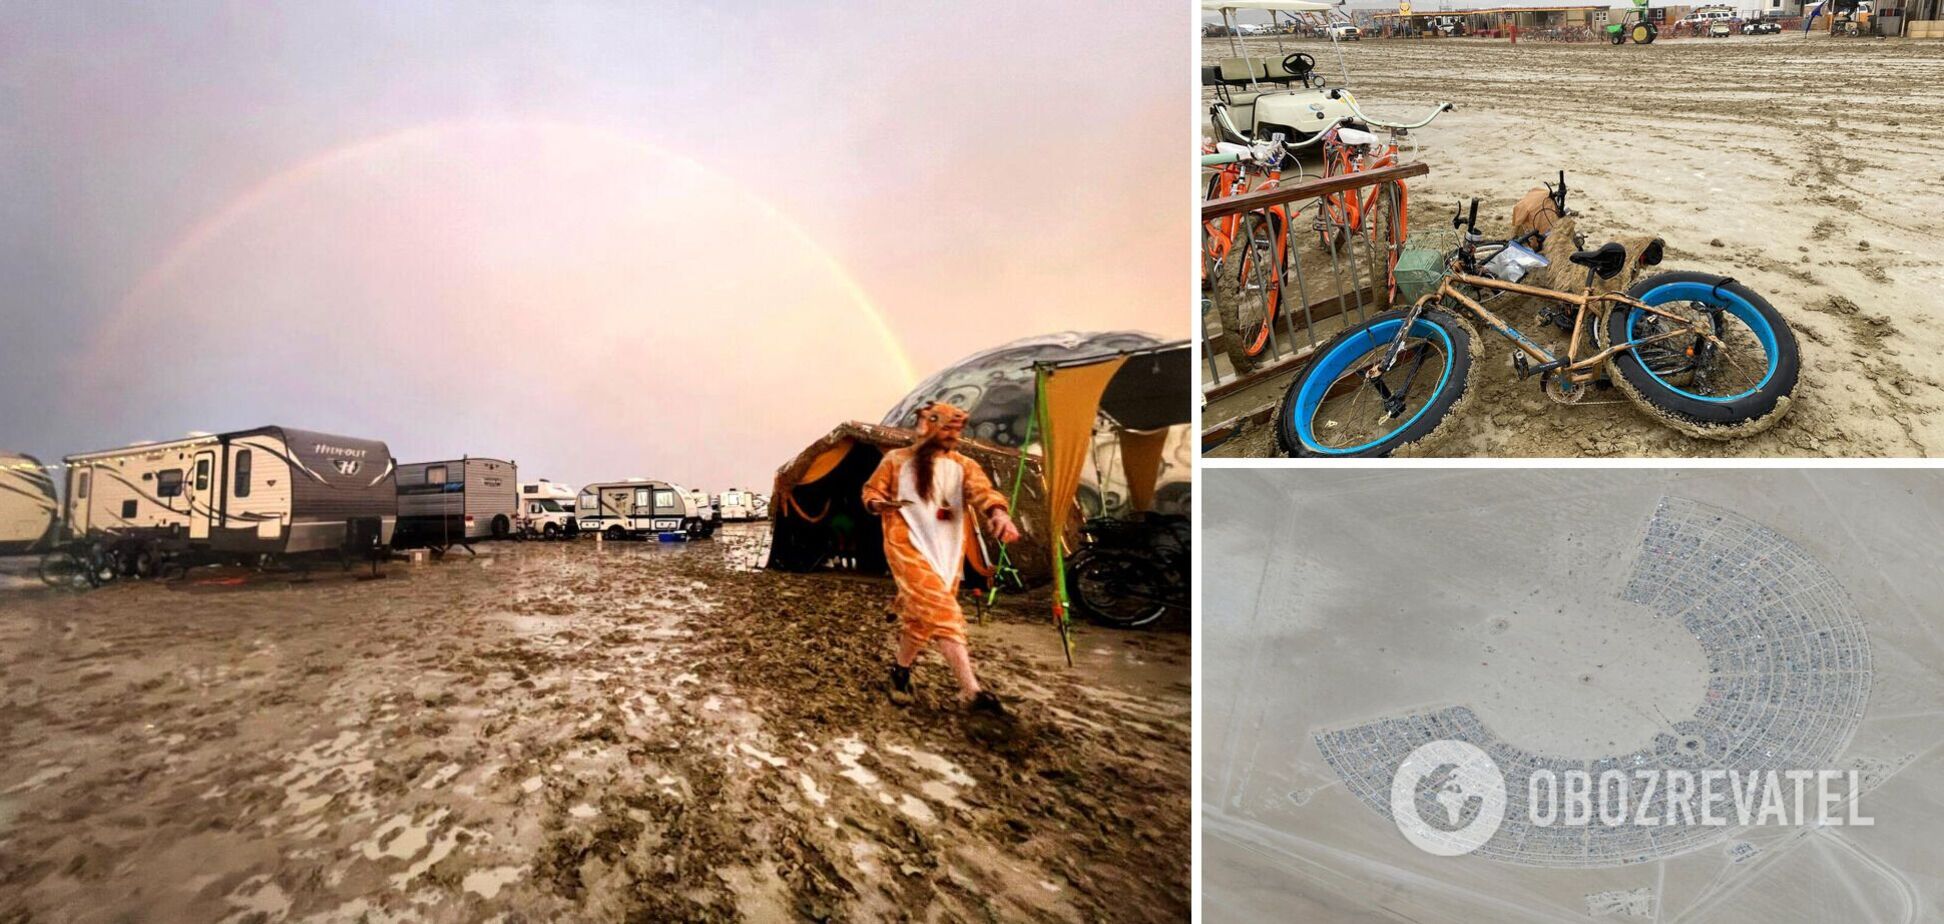 У США десятки тисяч учасників Burning Man застрягли в пустелі через зливи, є загиблий: людей закликали економити воду та їжу. Фото